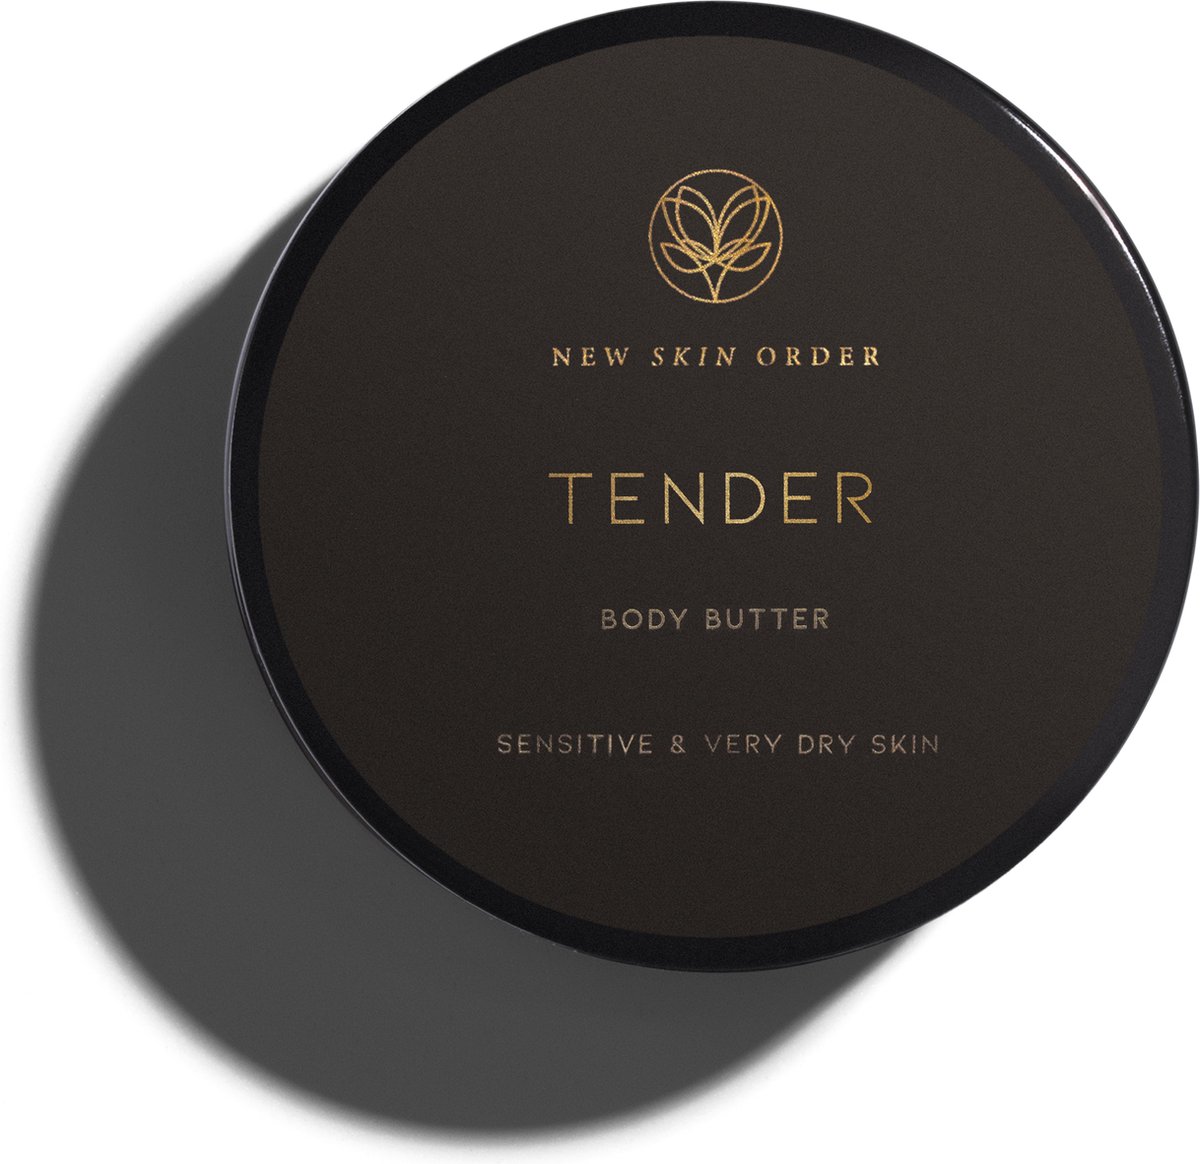 New Skin Order Tender body butter sensitive & very dry skin 100% natural skinfood